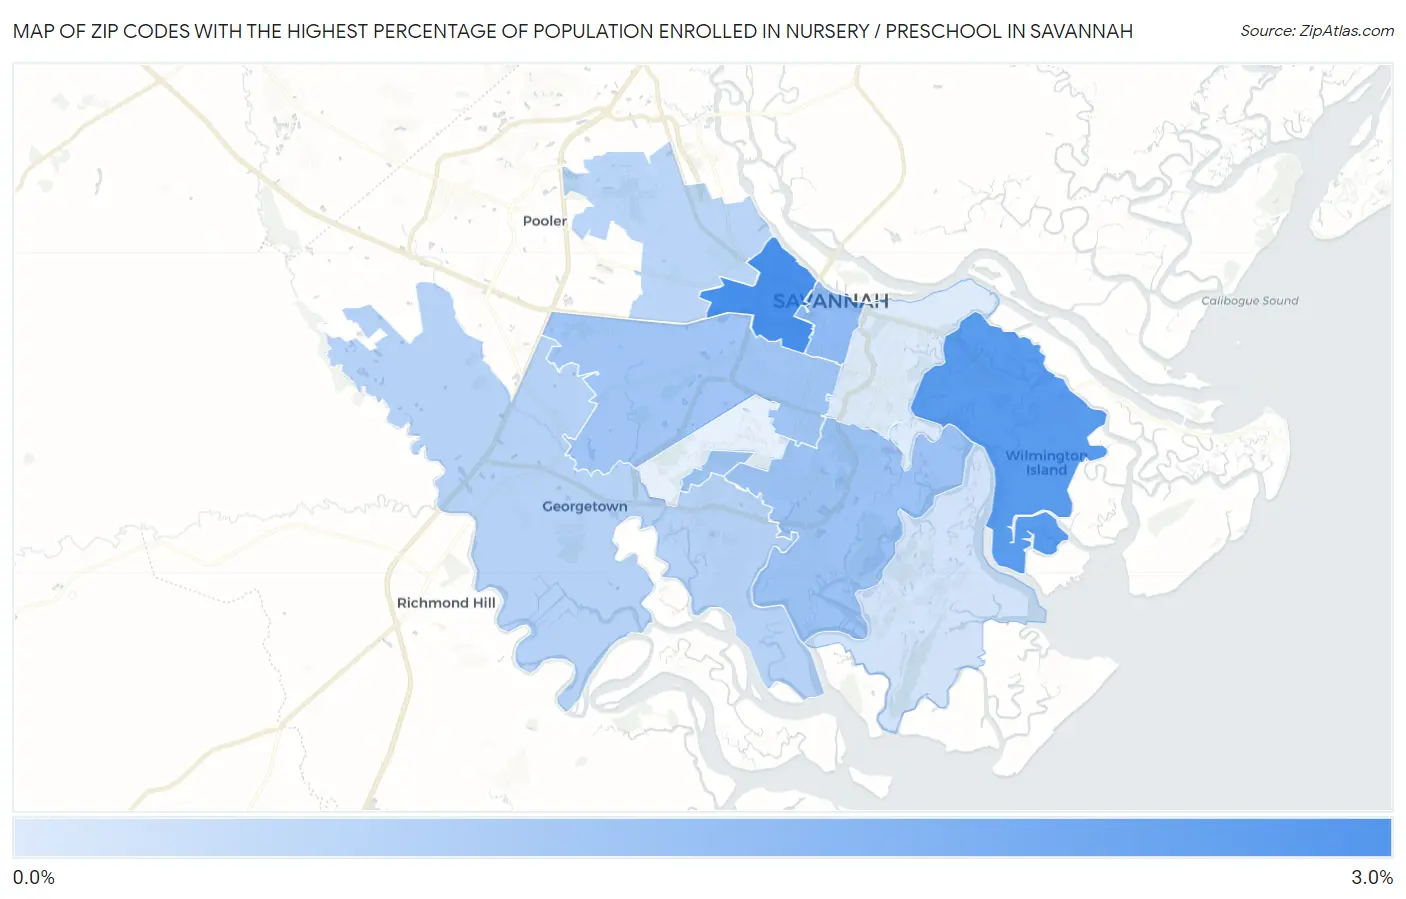 Zip Codes with the Highest Percentage of Population Enrolled in Nursery / Preschool in Savannah Map